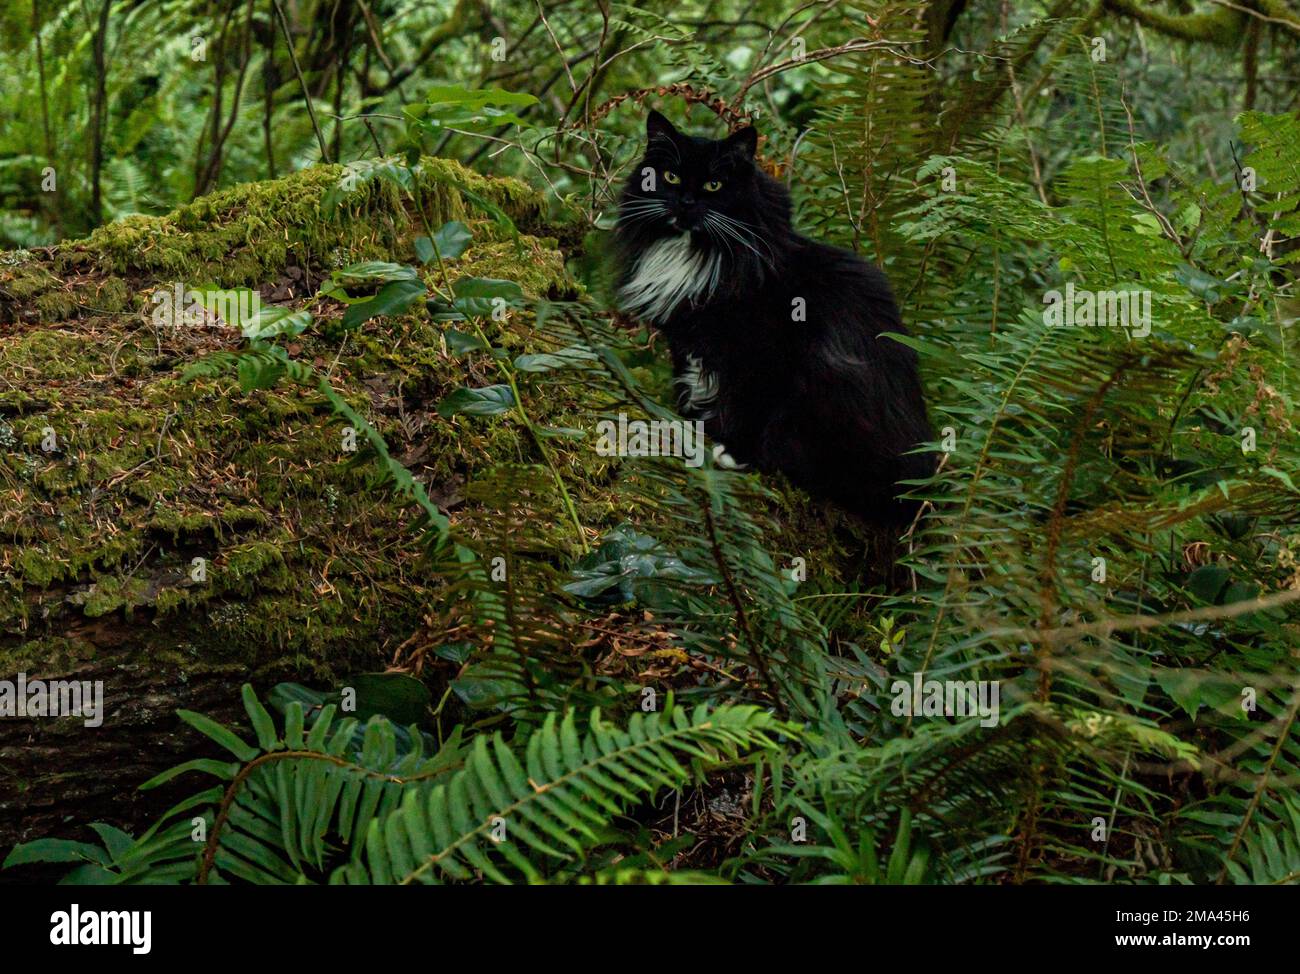 Schwarze Katze auf einem mossigen Baumstamm, mit Farnen und Wald. Grüne Kontraste mit süßer Katze, langer Smoking. Stockfoto